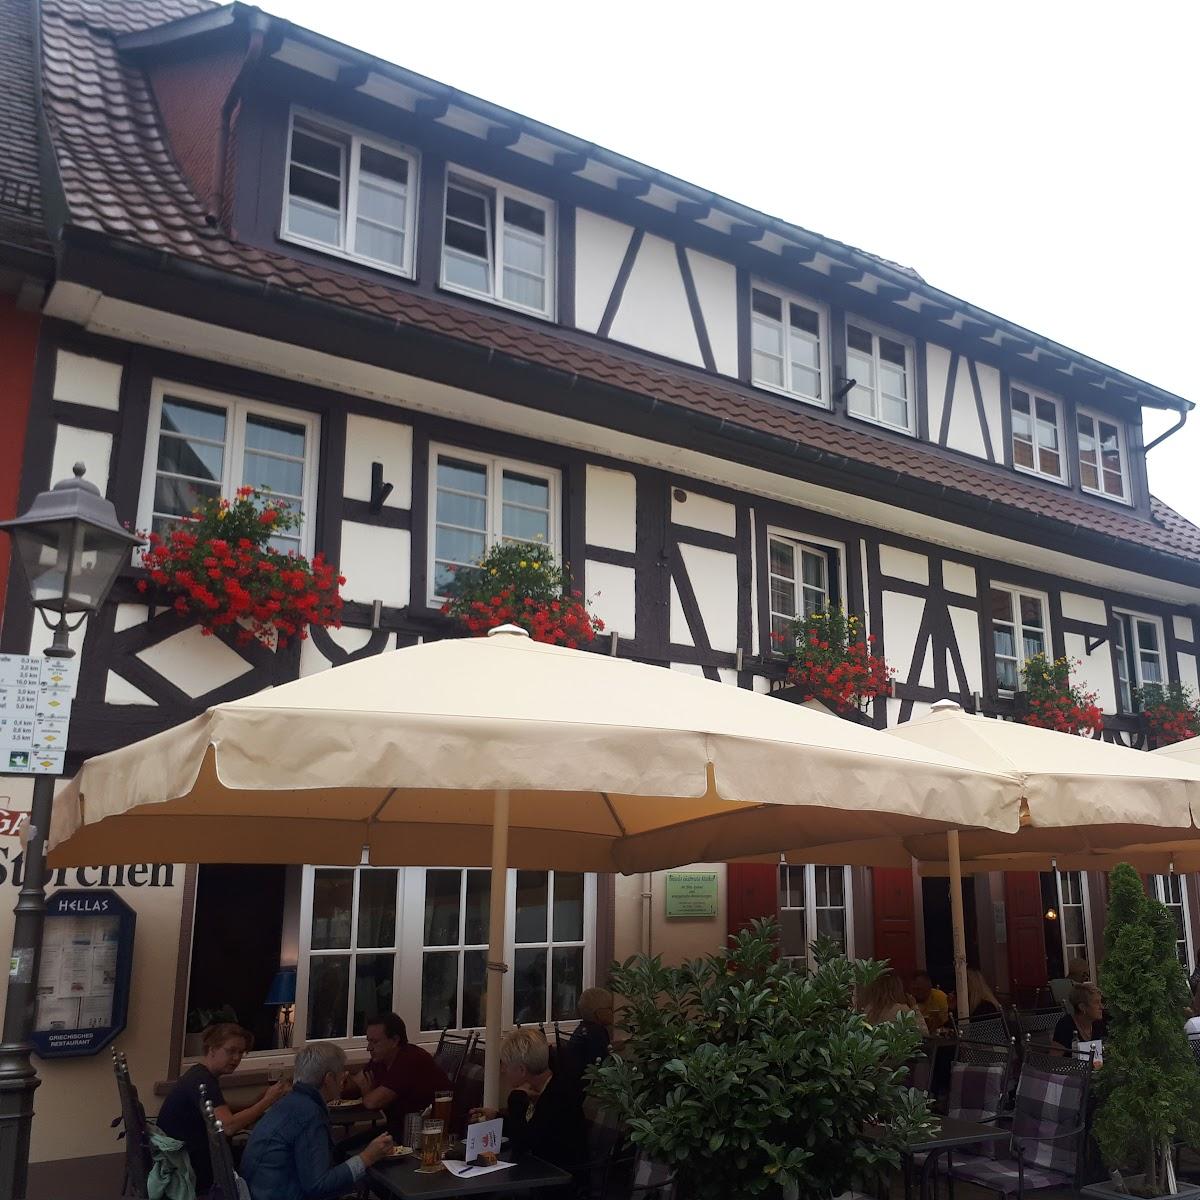 Restaurant "Gasthaus Storchen" in Haslach im Kinzigtal